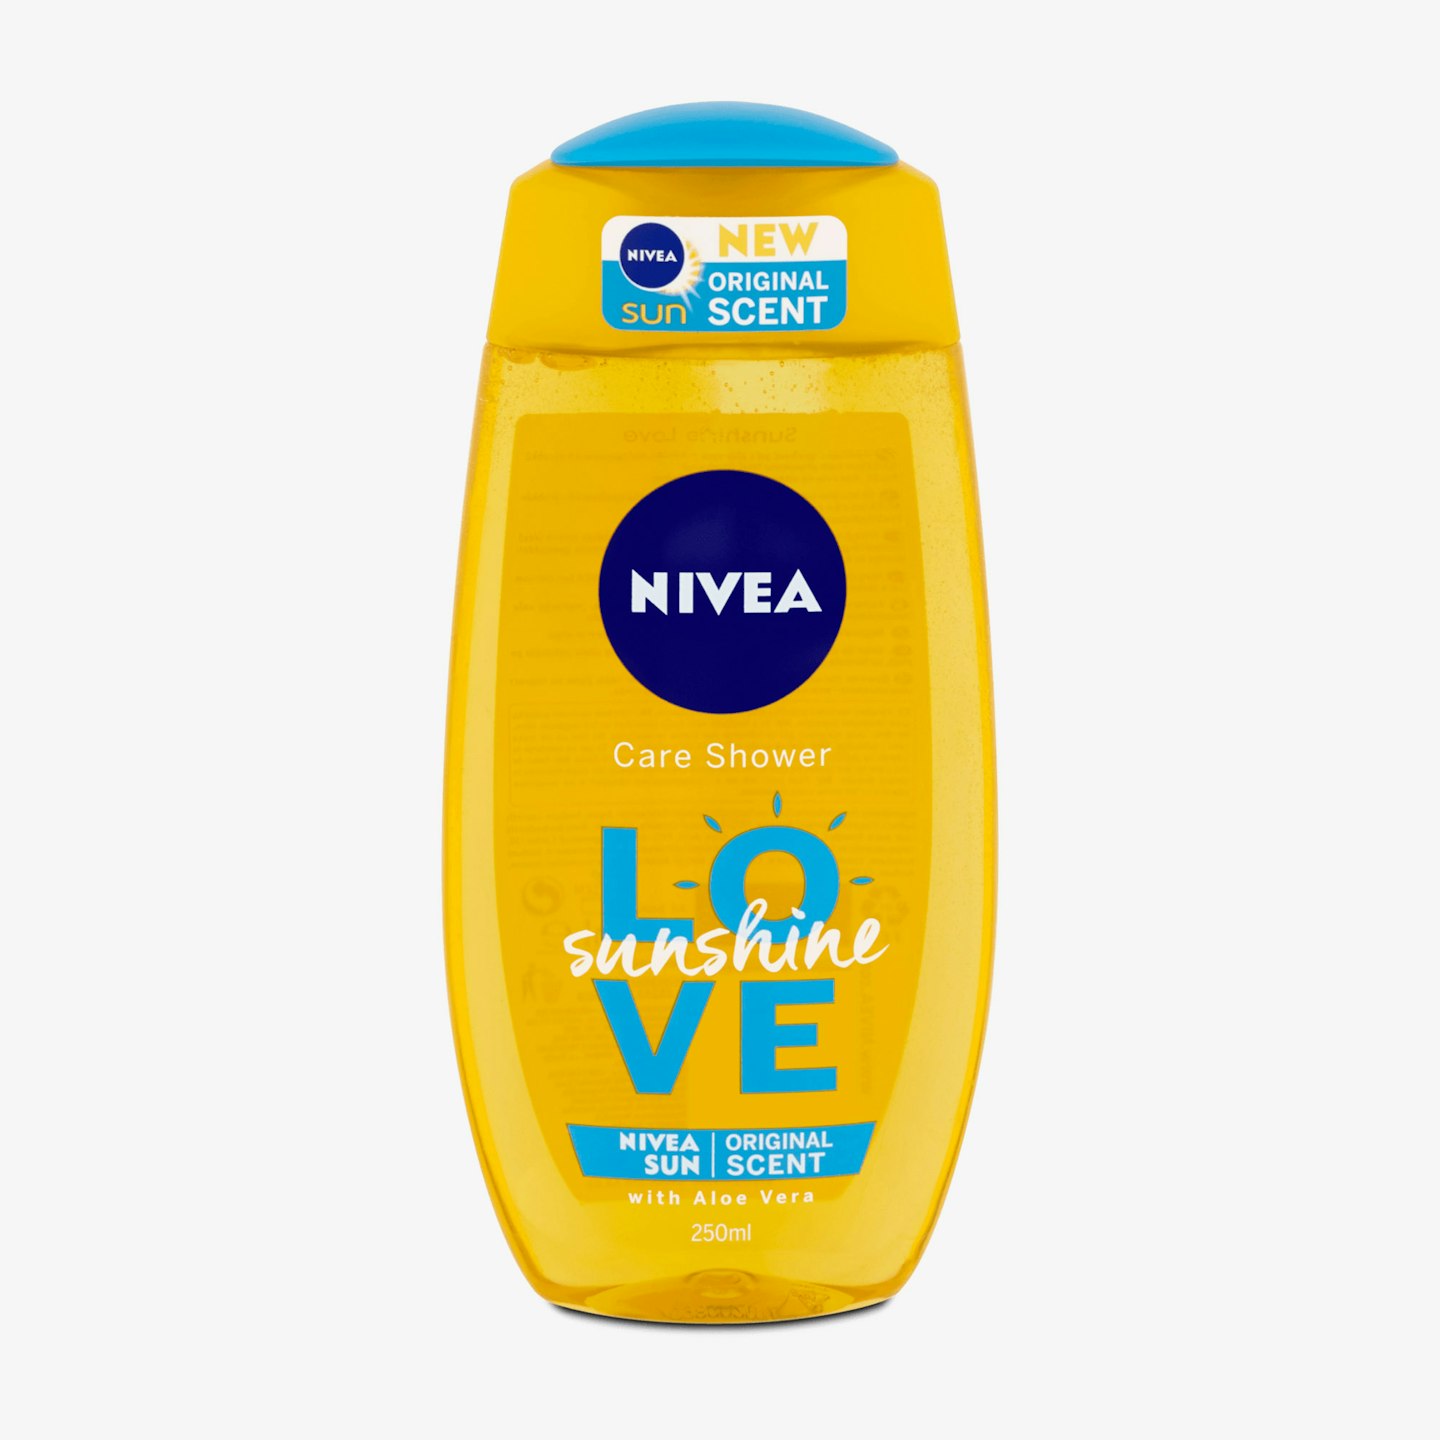 NIVEA Sunshine Love Shower Gel